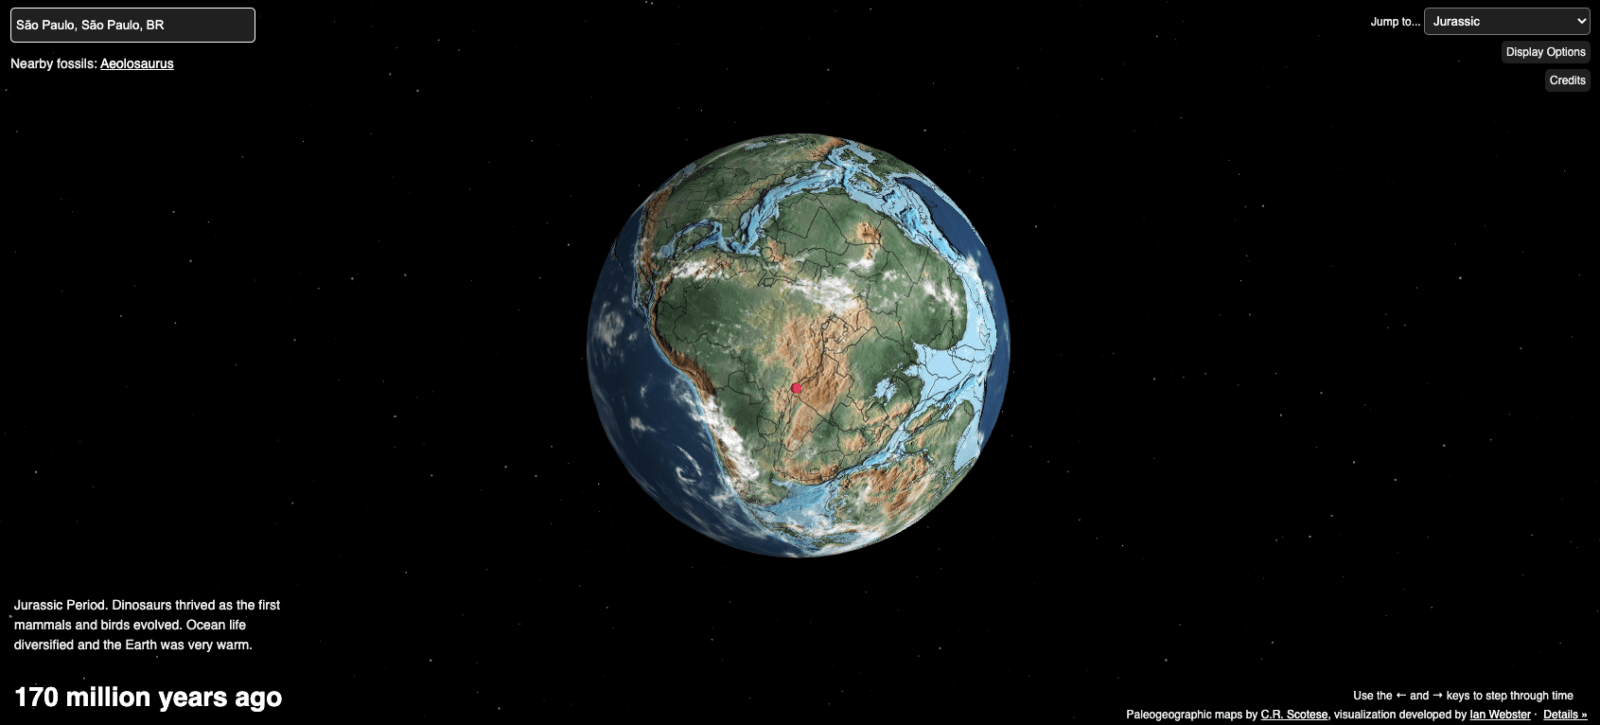 Mapa Interativo permite ver a evolução do planeta ao longo das eras geológicas